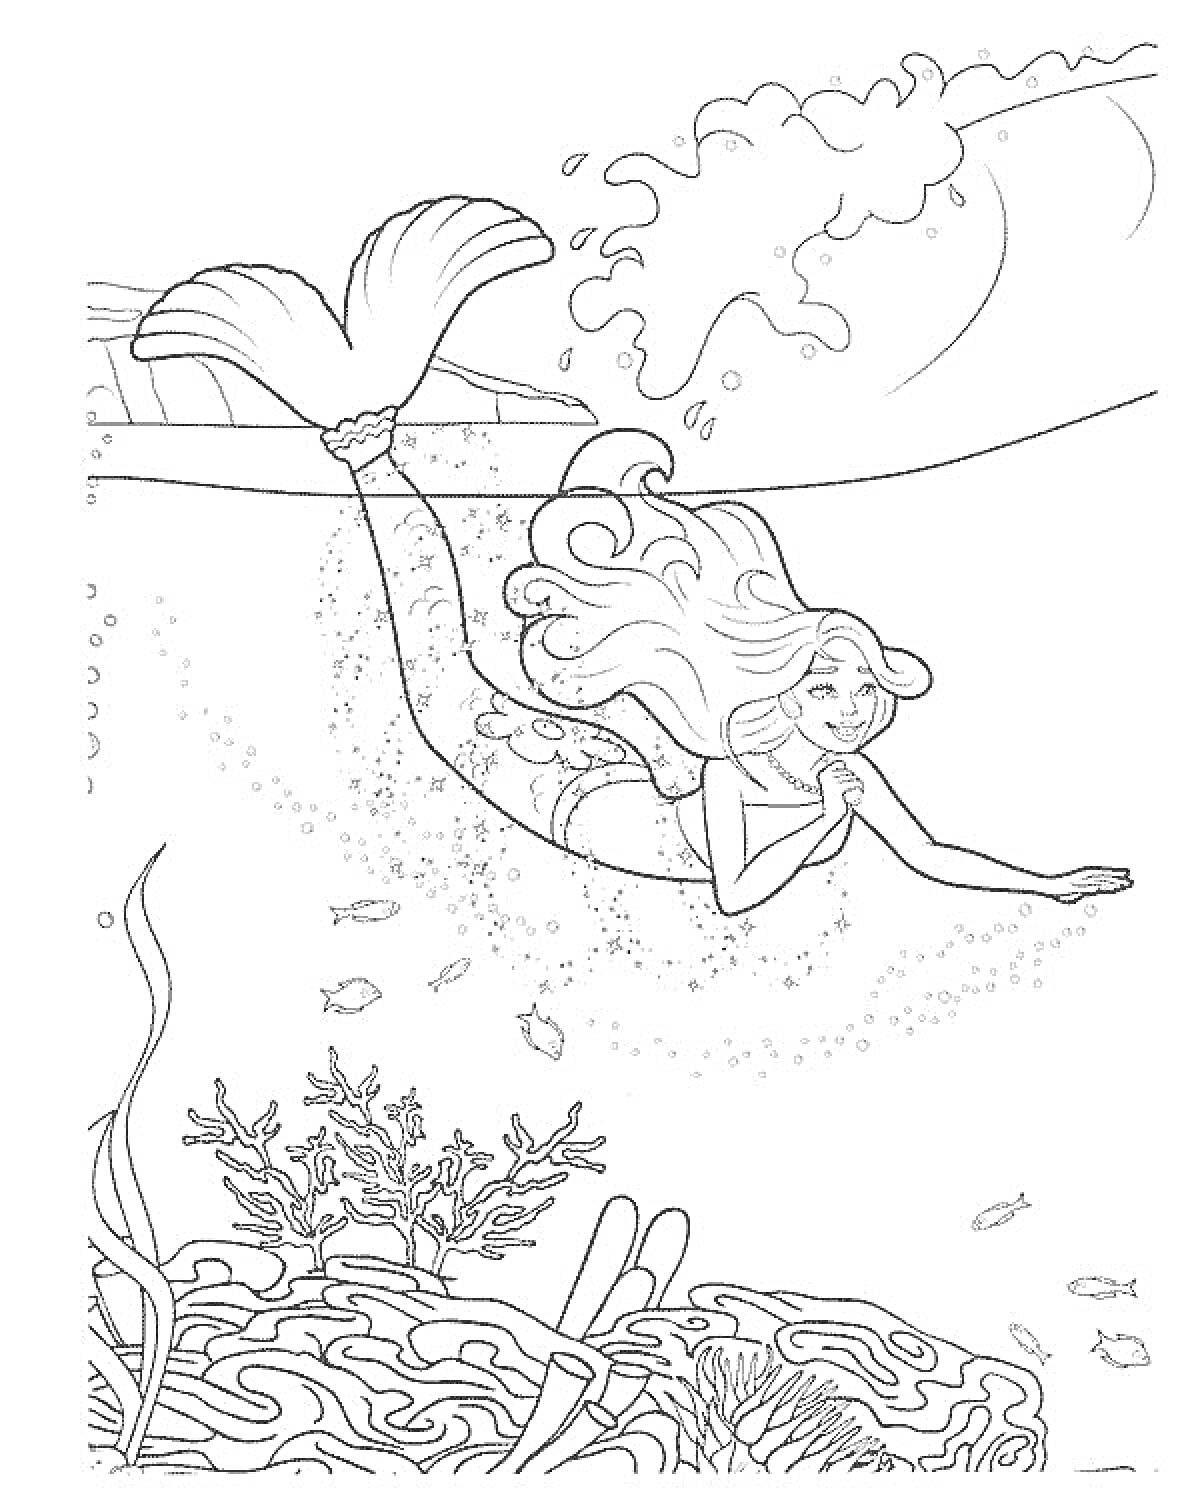 Раскраска Барби Русалочка плывёт под водой среди рыбок и кораллов, вдалеке видны волны и солнечный свет